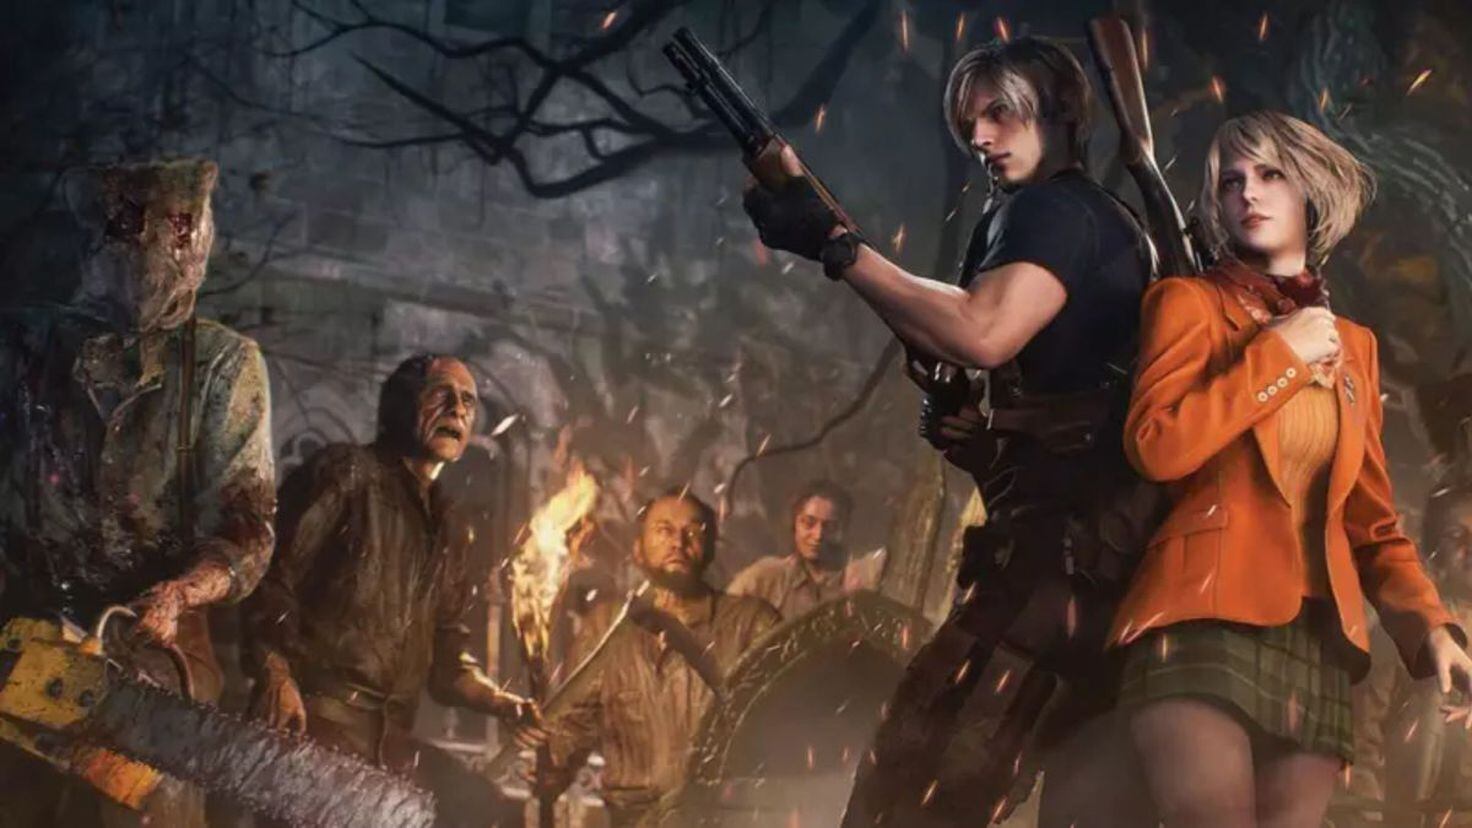 All Ada & Leon Scenes Full Comparison in Resident Evil 4: Original vs Remake  Editions 